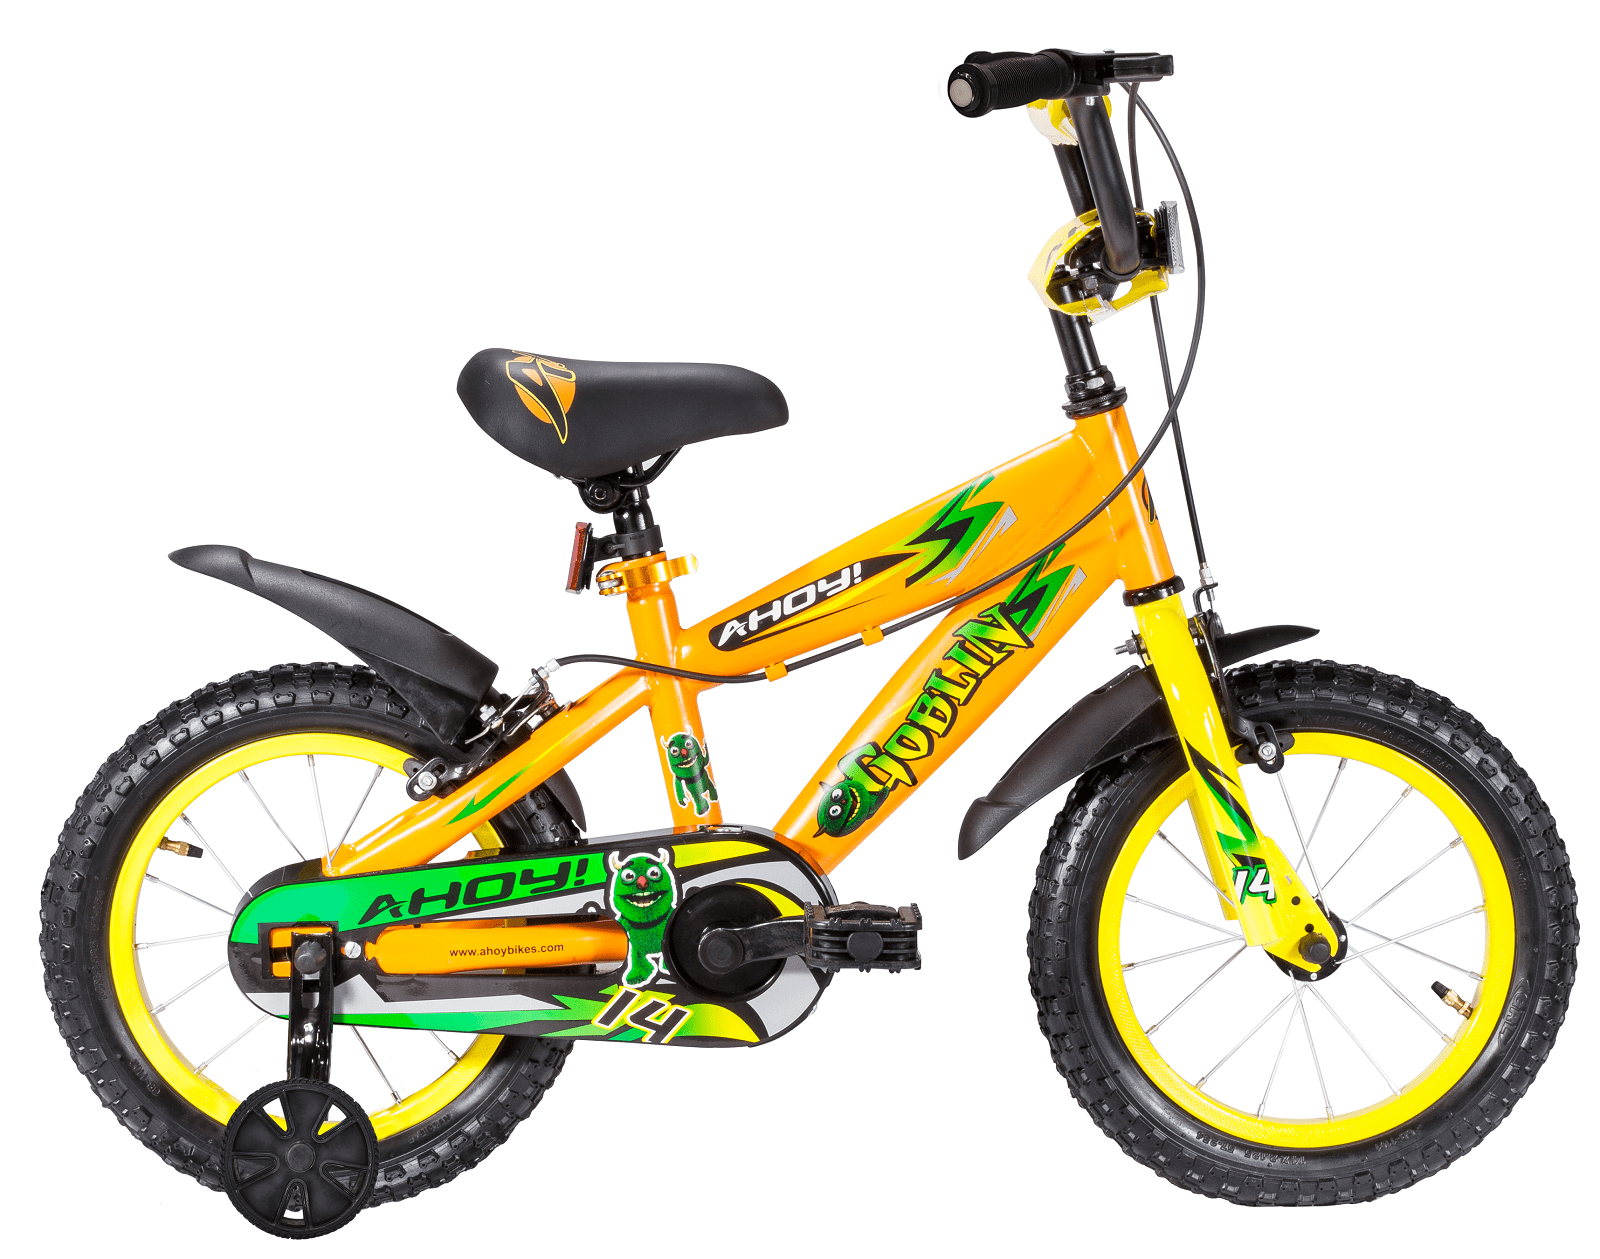 Goblin Kids Bike Single Speed 14T | Buy Orange Cycle Non Gear for Boys